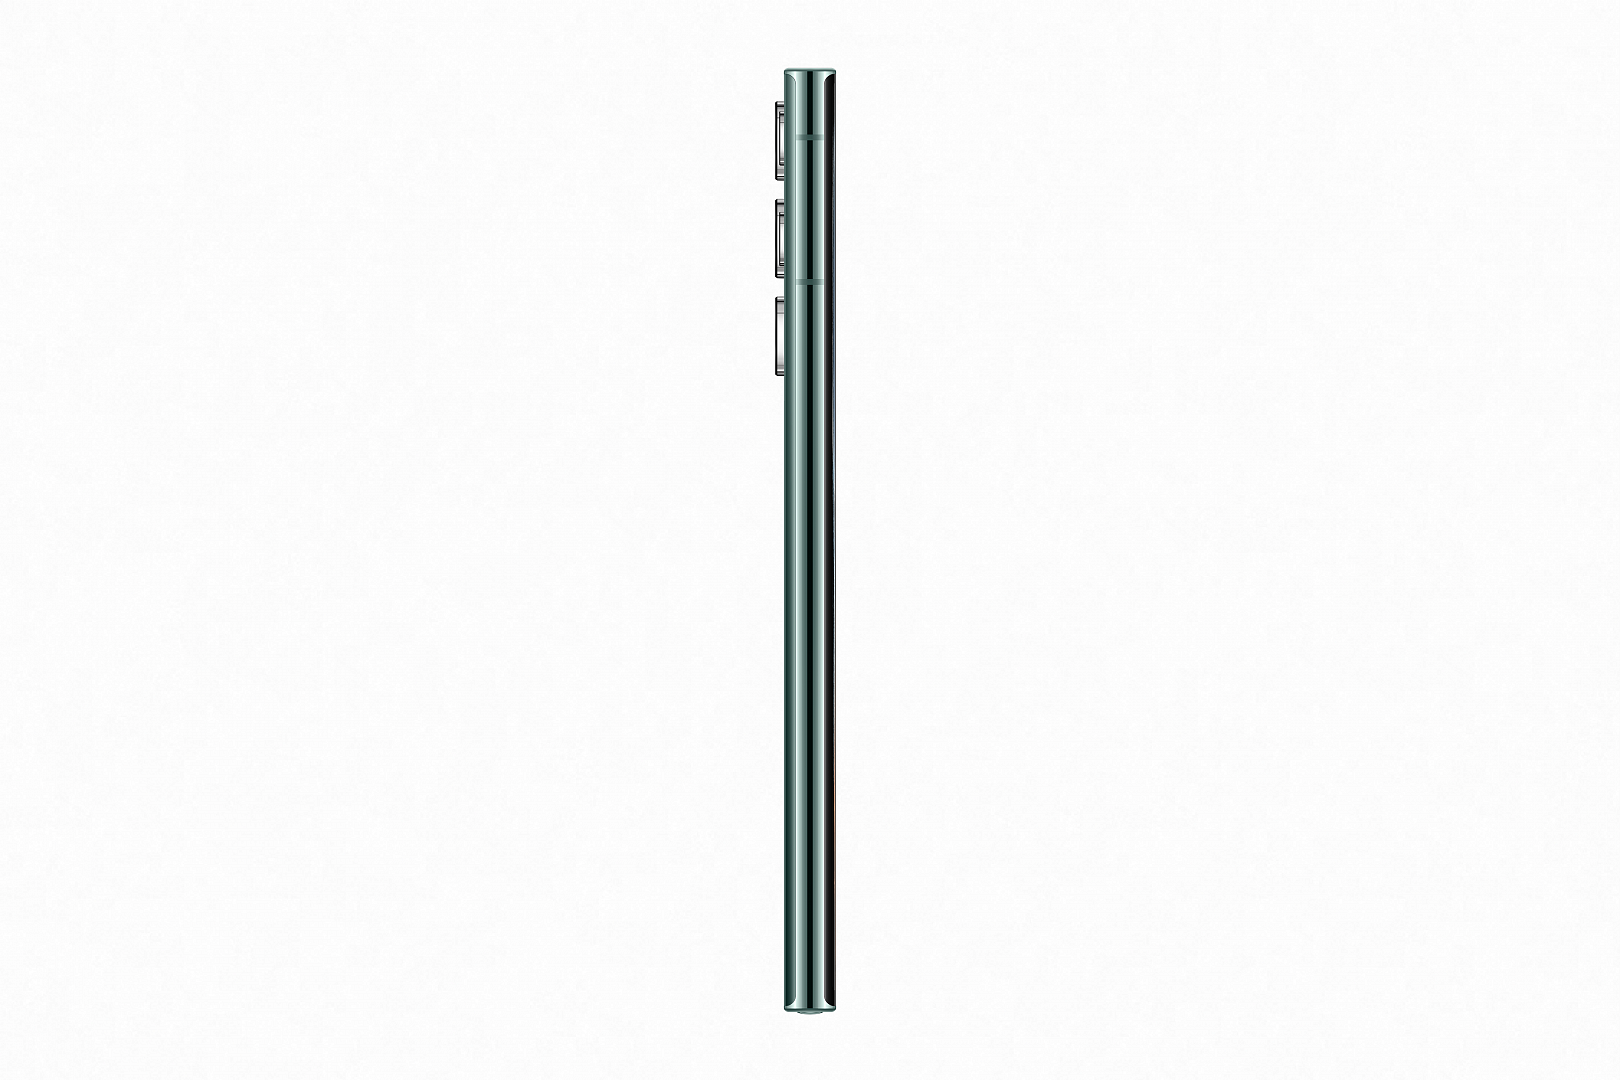 Смартфон SAMSUNG Galaxy S22 Ultra 12/512 green - зеленый